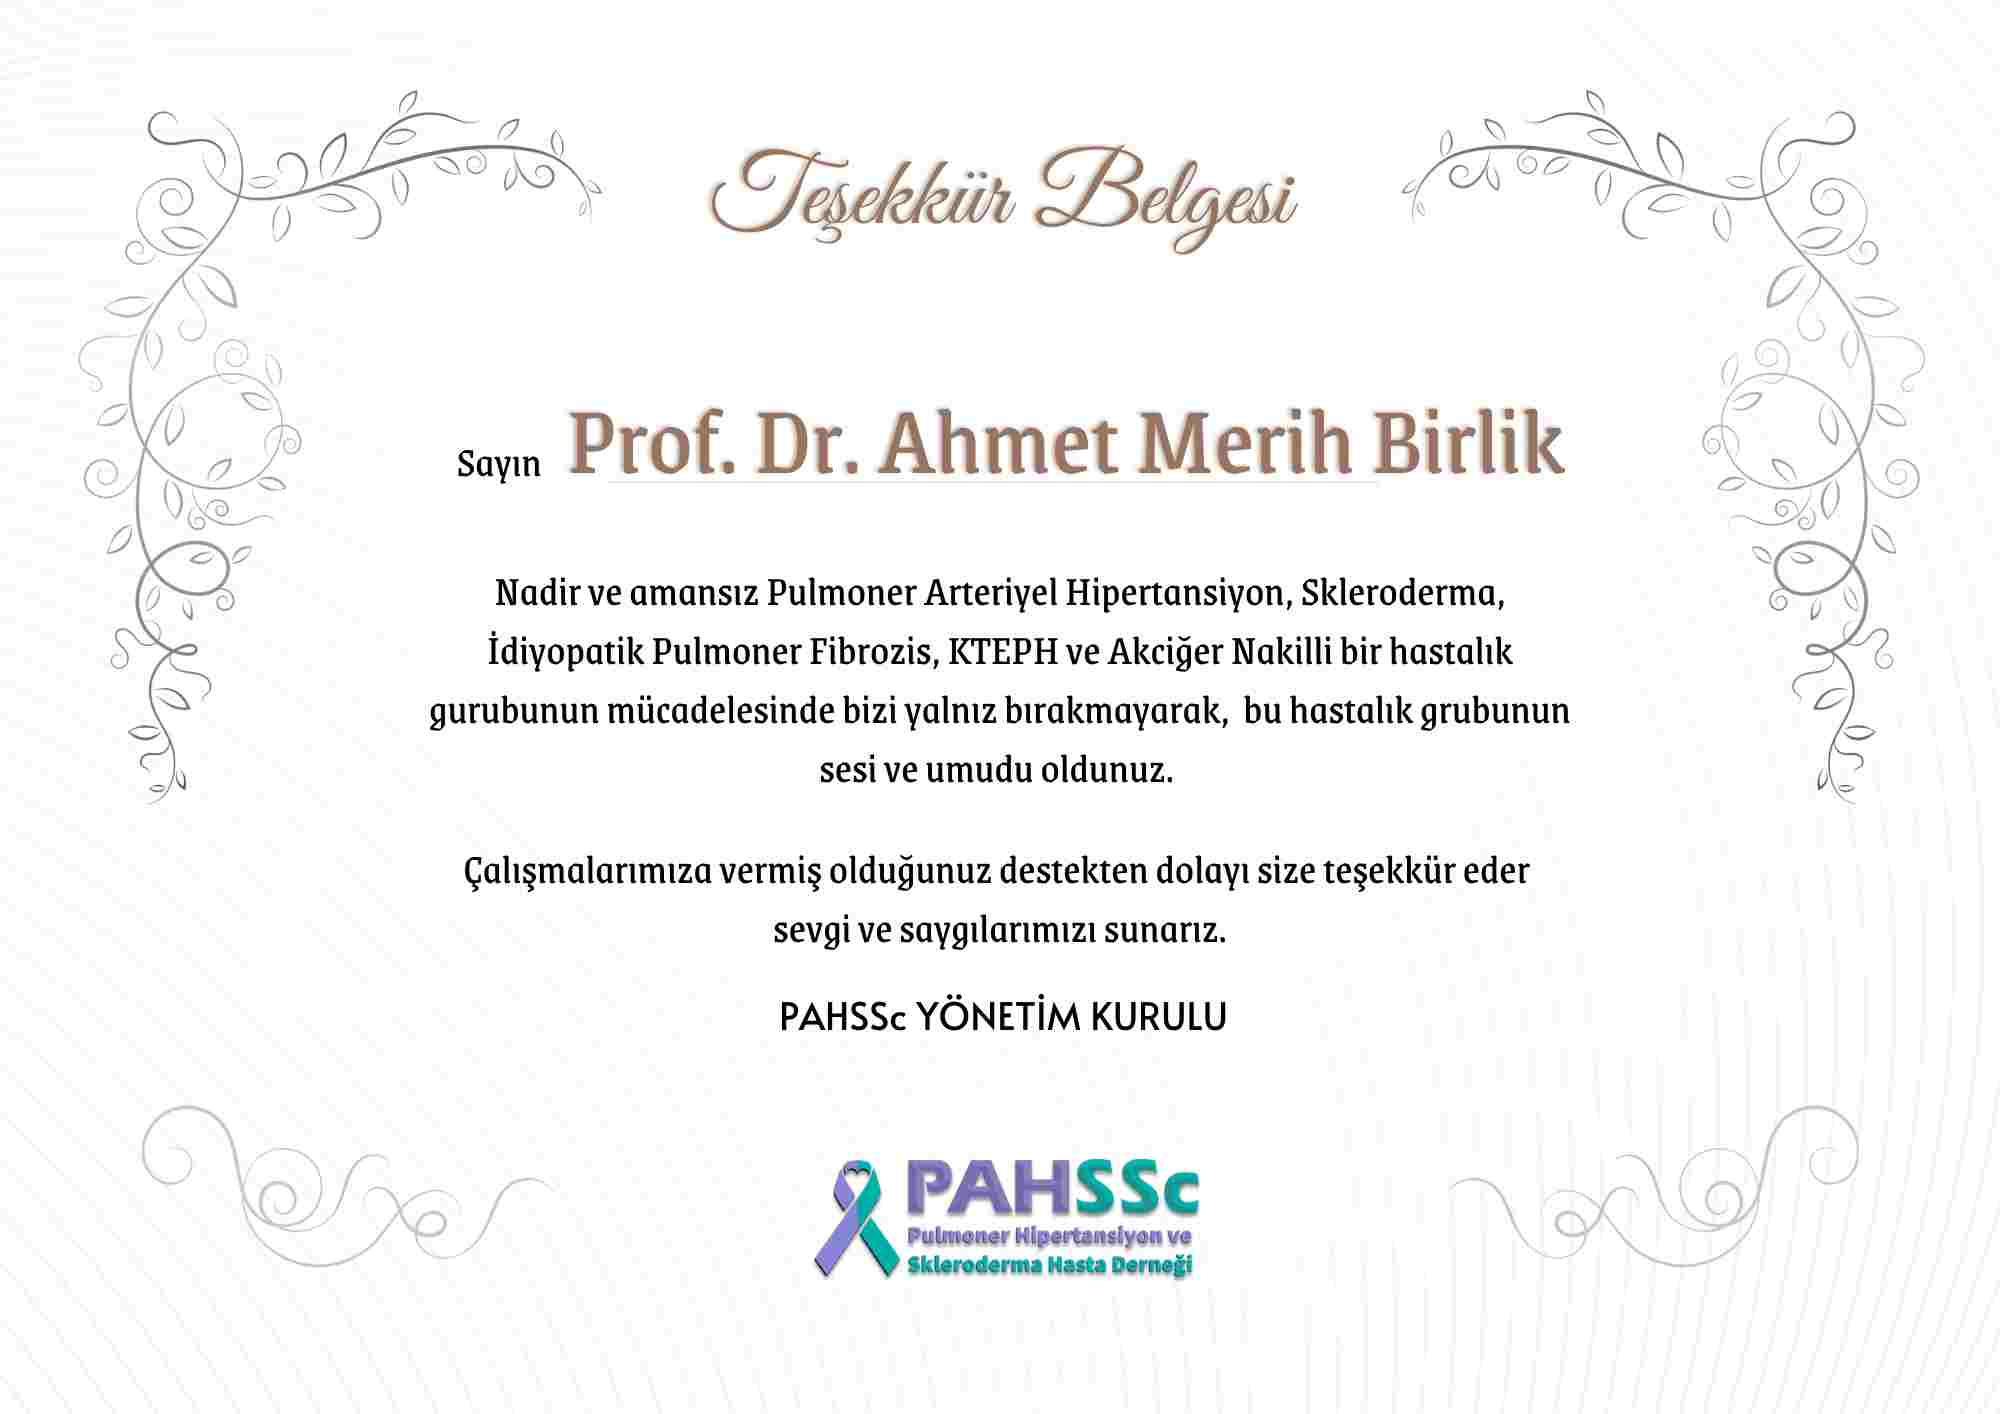 Prof. Dr. Ahmet Merih Birlik